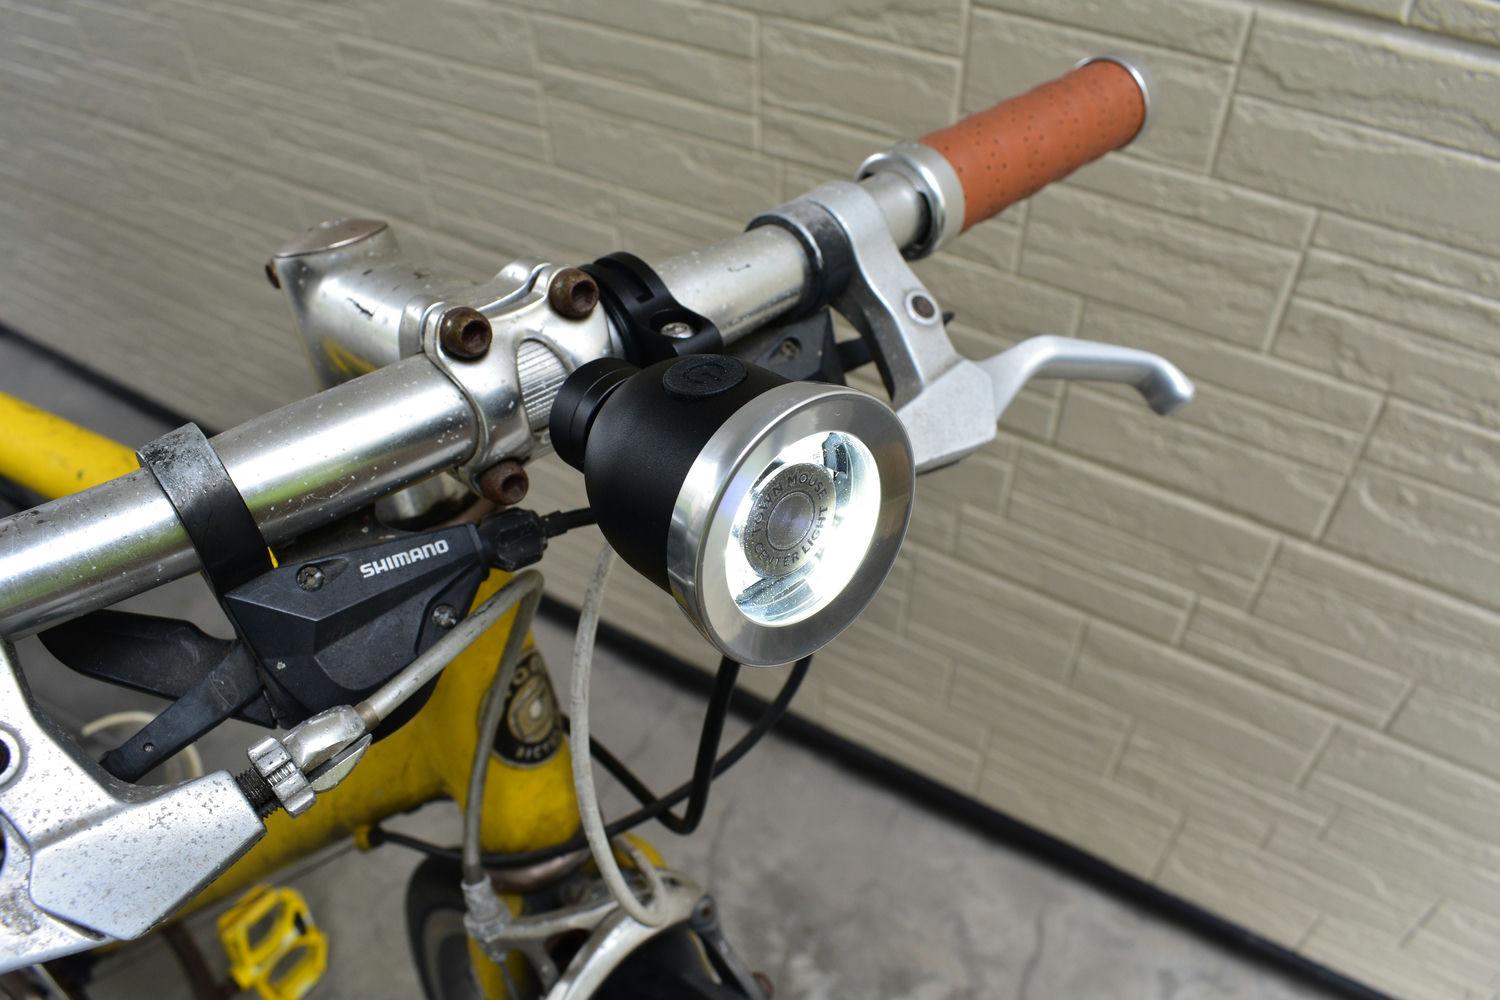 UK生まれの自転車用ライト。アルミボディが美しい「Center Light」を試してみた | ライフハッカー・ジャパン